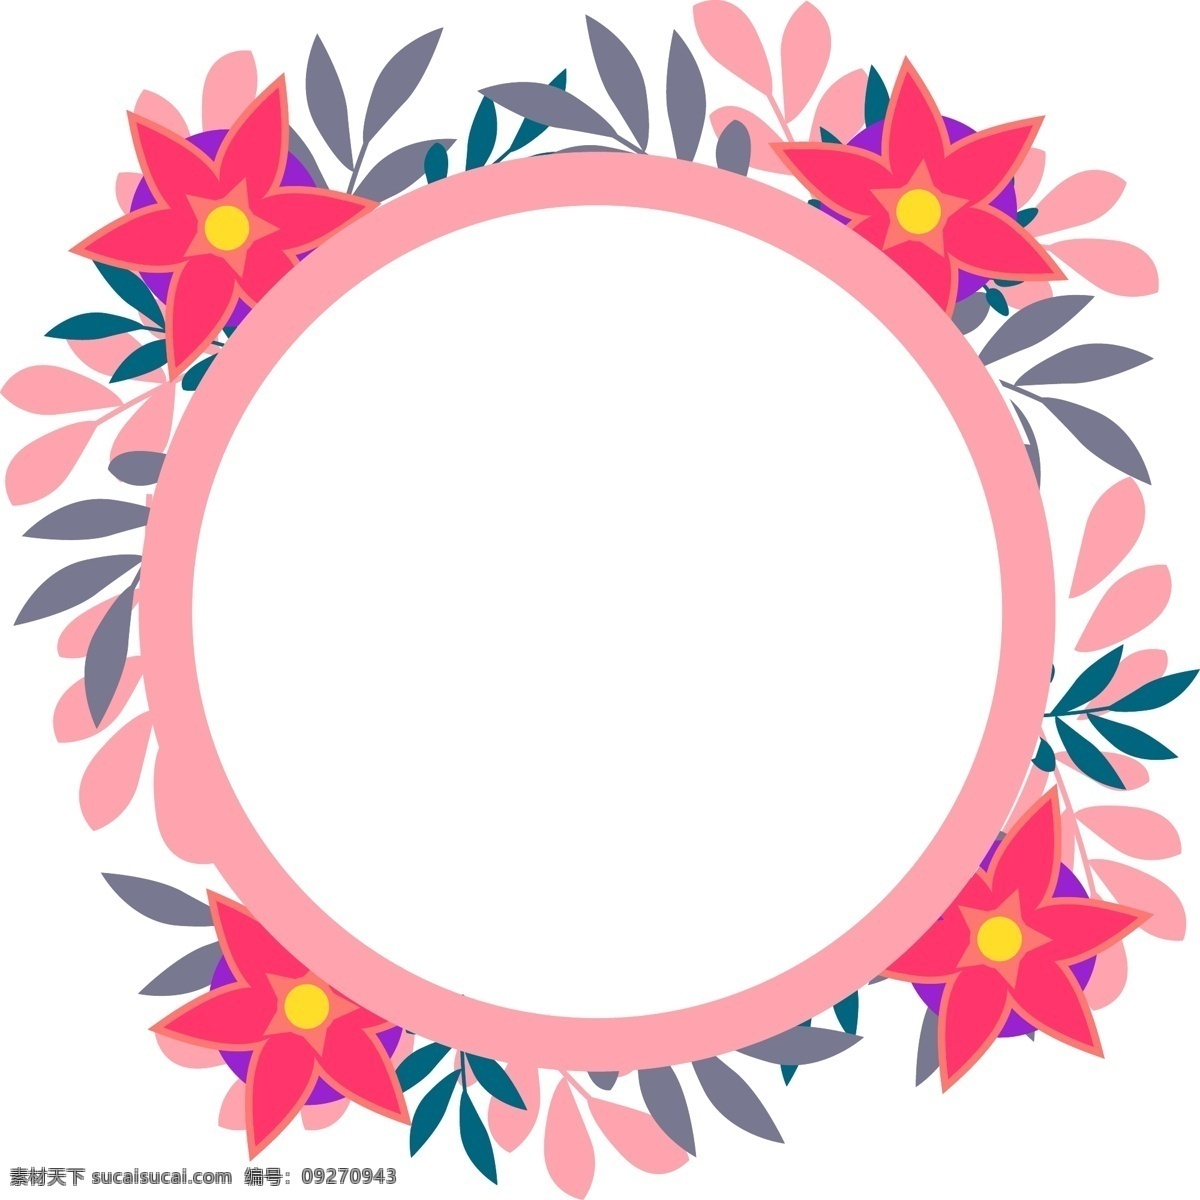 简约 风 促销 粉色 花环 元素 粉红 花瓣 花蕊 花朵 圆框 边框 技术 氛围 活动 圆形 环形 五颜六色 多彩 靓丽